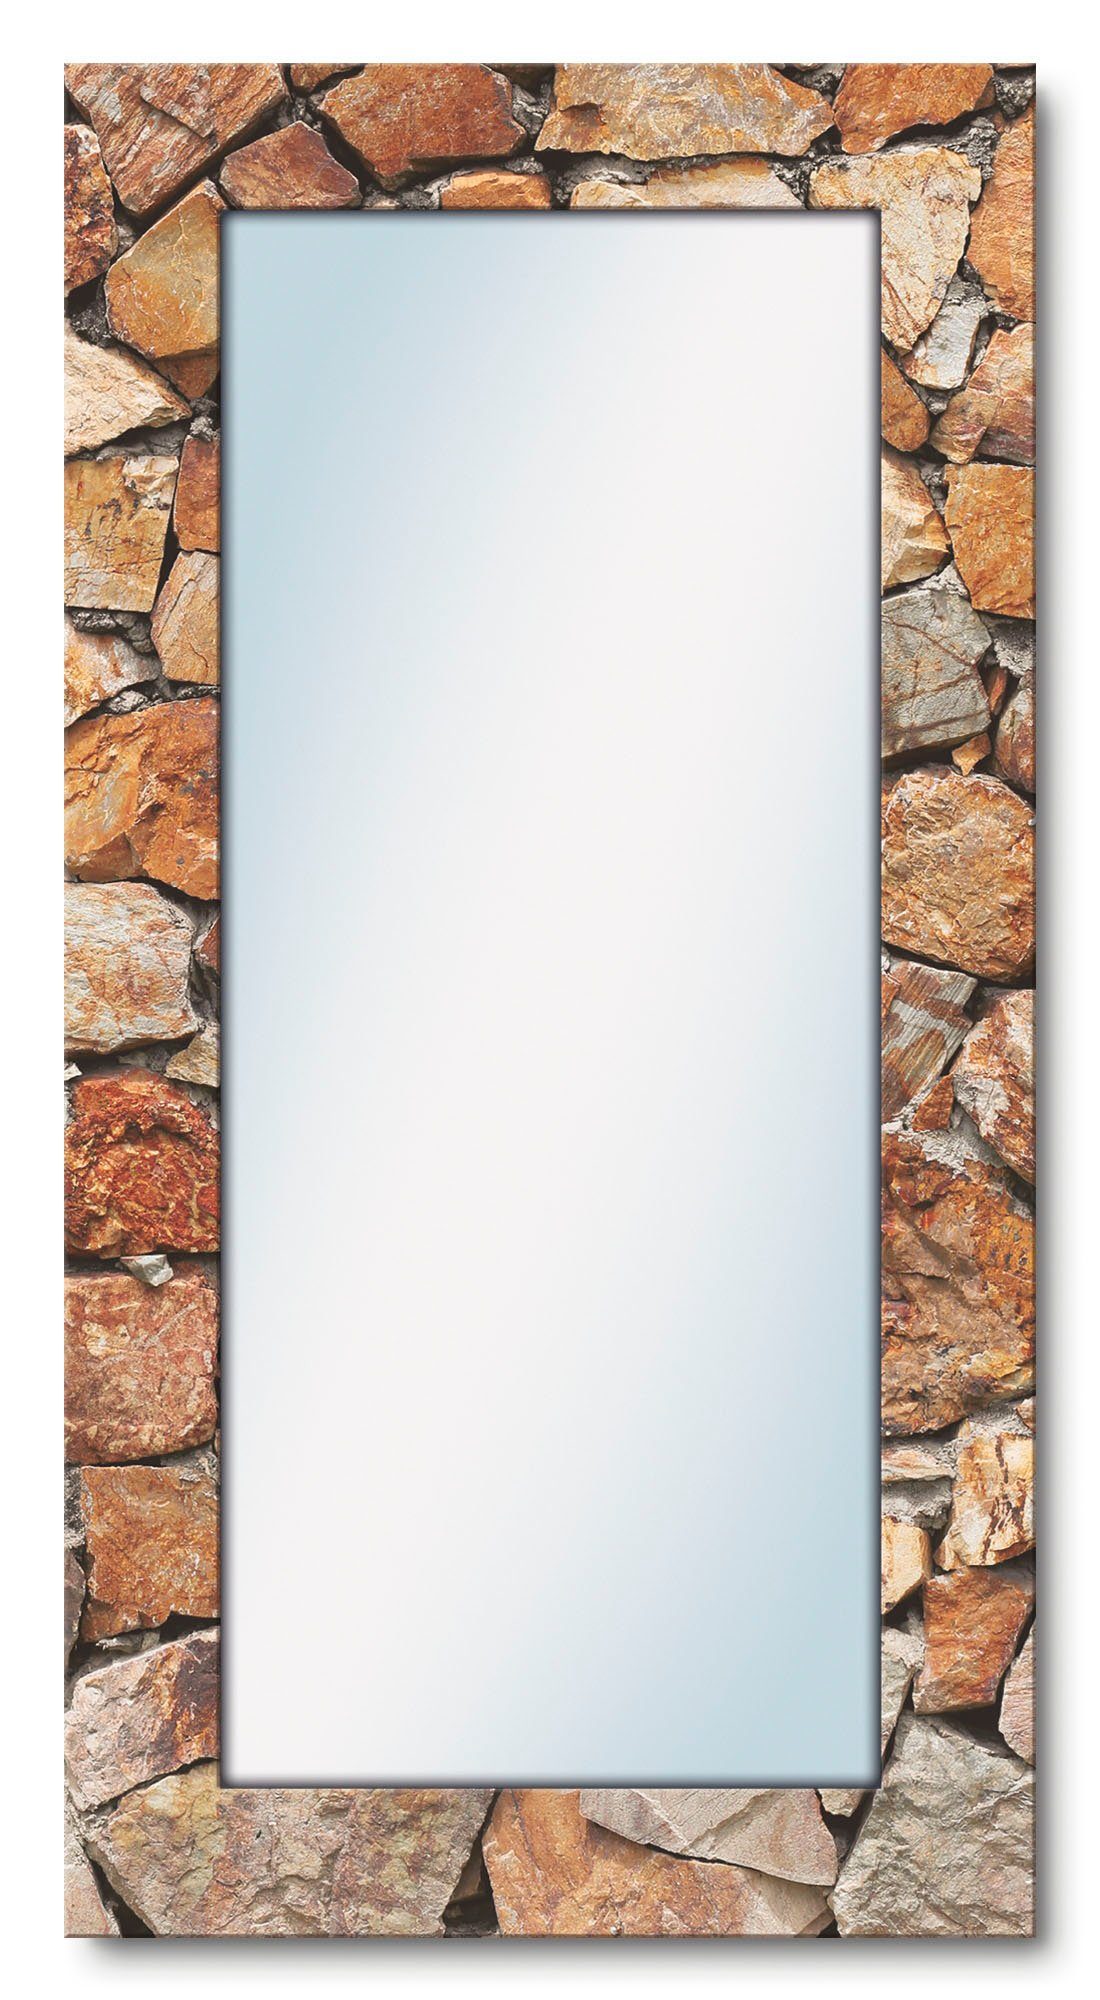 Artland Dekospiegel Braune Steinwand, gerahmter Landhaus Ganzkörperspiegel, mit Motivrahmen, Wandspiegel